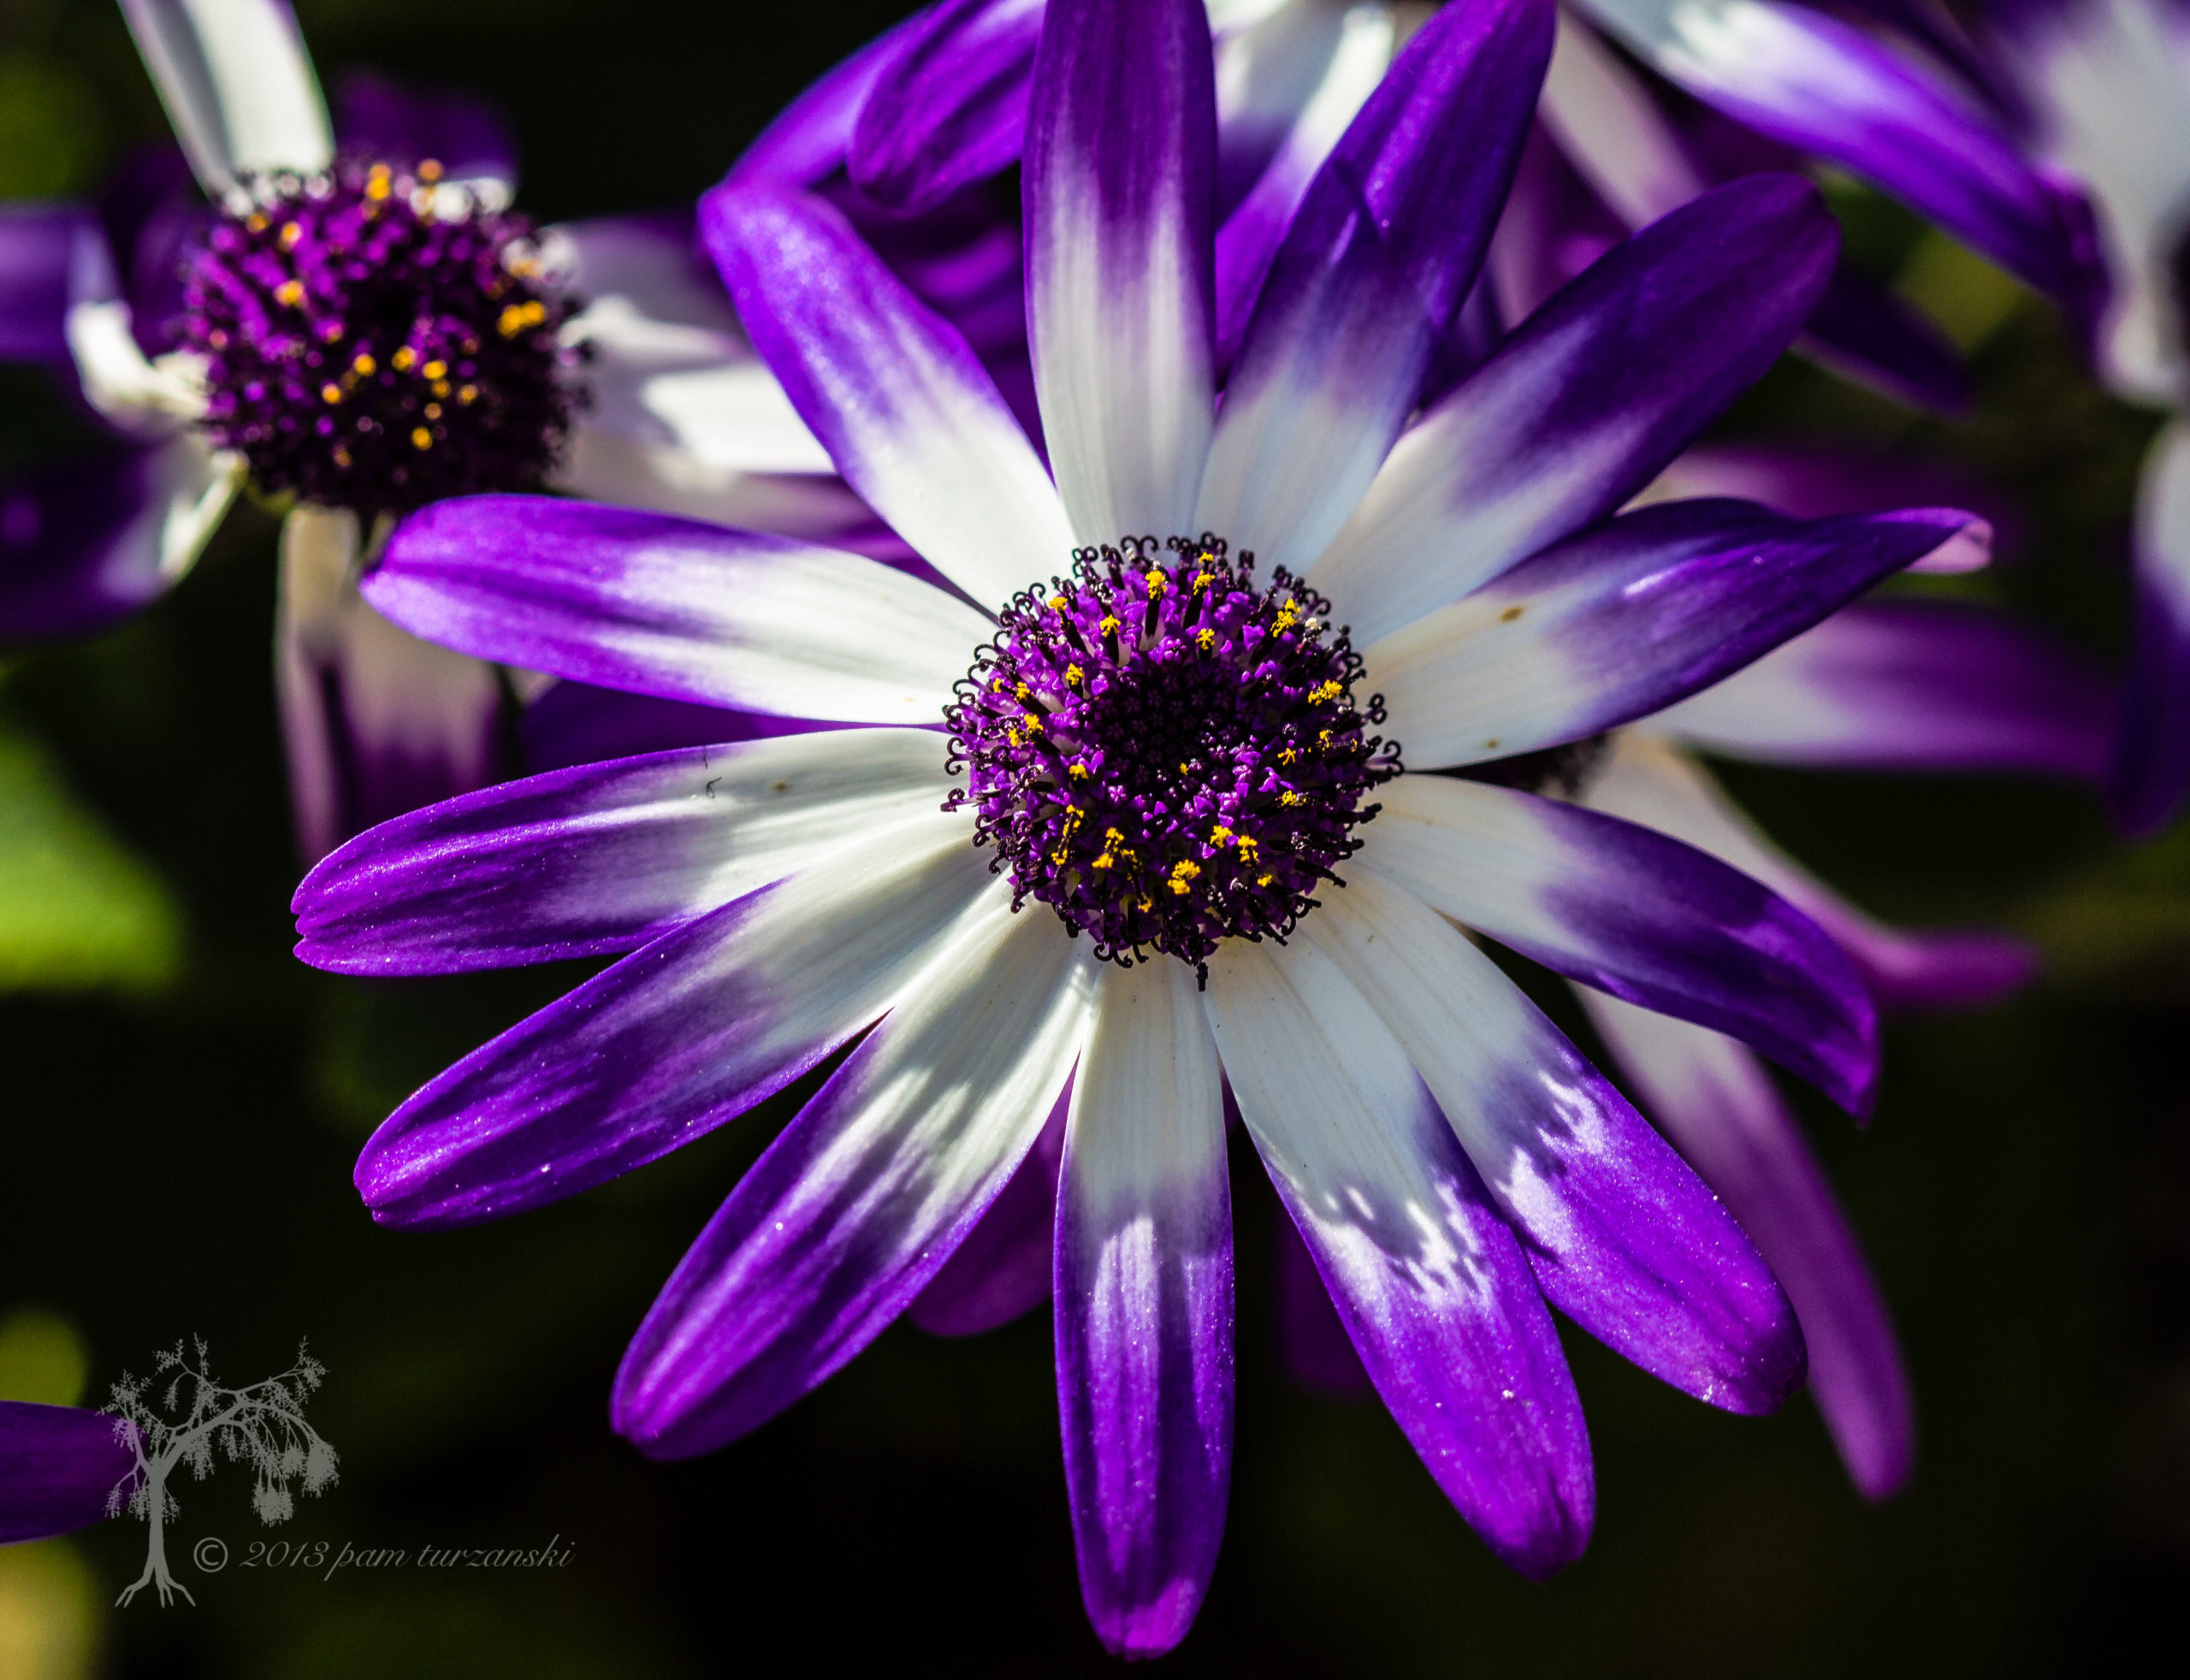 Uređivanje fotografija cvijeća s unaprijed postavljenim Lightroom IMG_4925